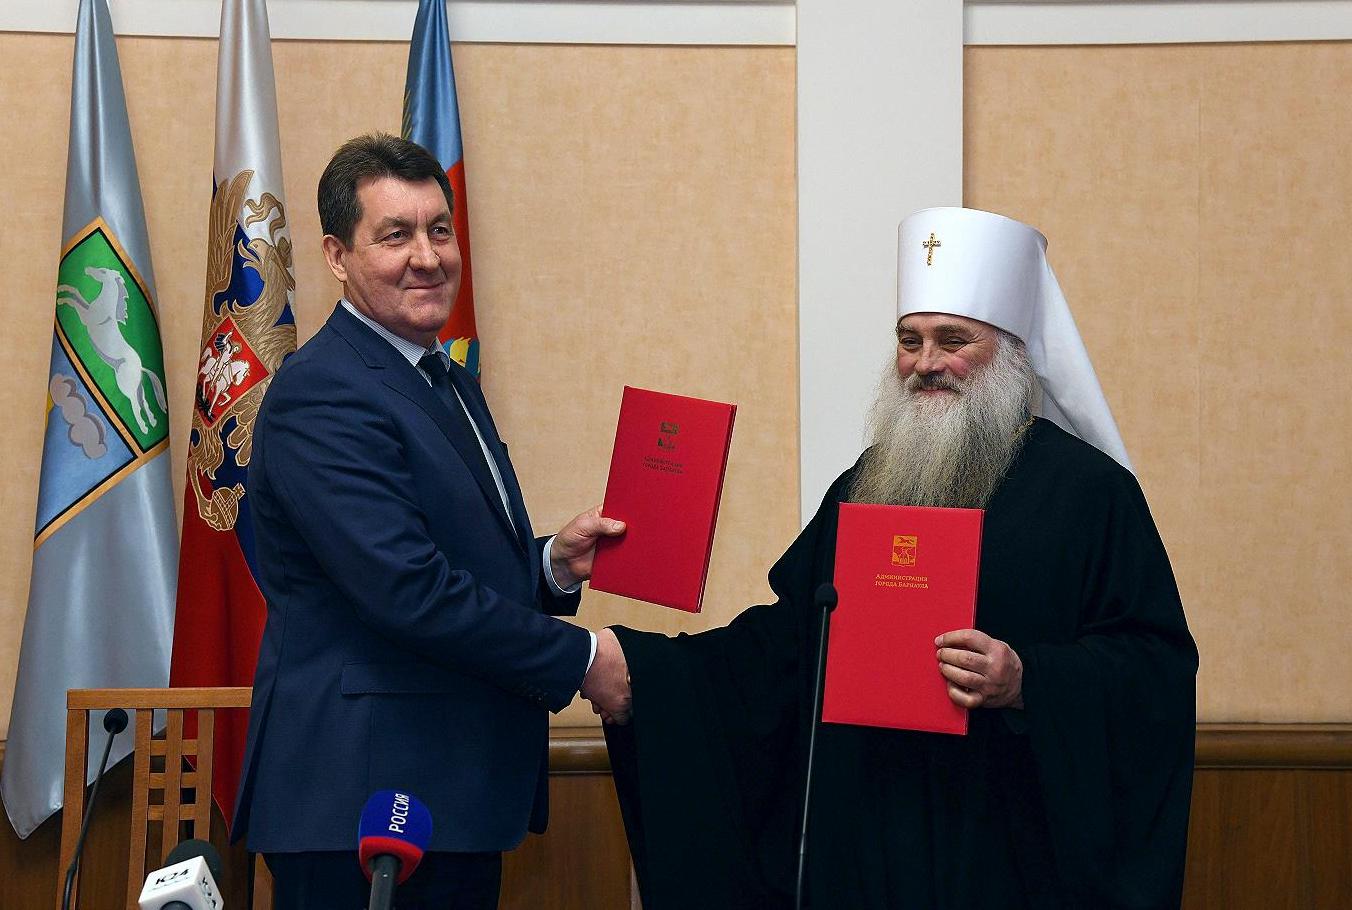 В администрации Барнаула подписан предварительный договор о передаче здания планетария православной церкви